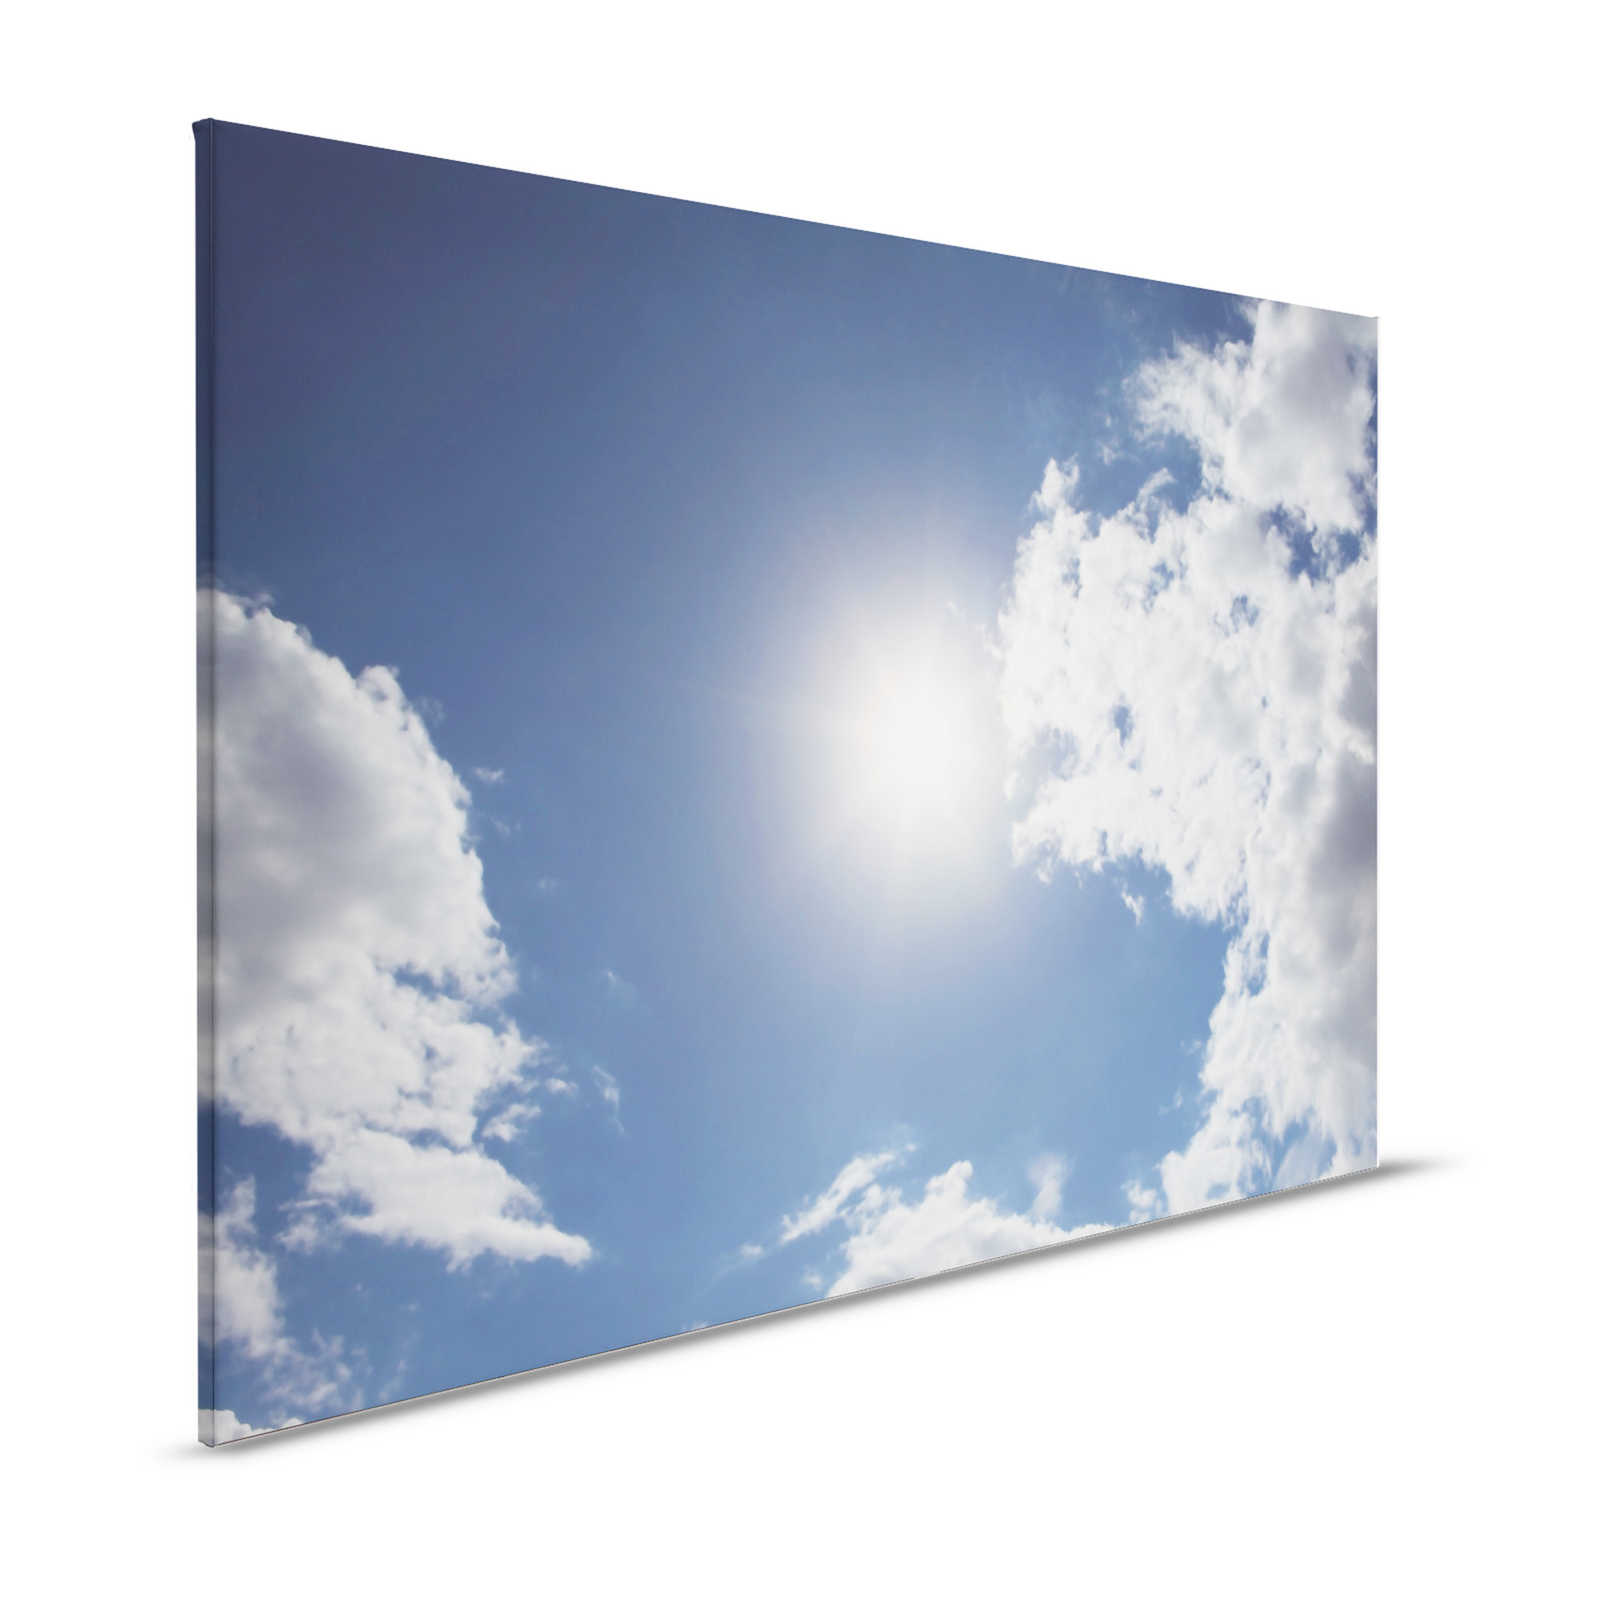 Ciel bleu - Tableau toile soleil & ciel nuageux bleu - 1,20 m x 0,80 m
